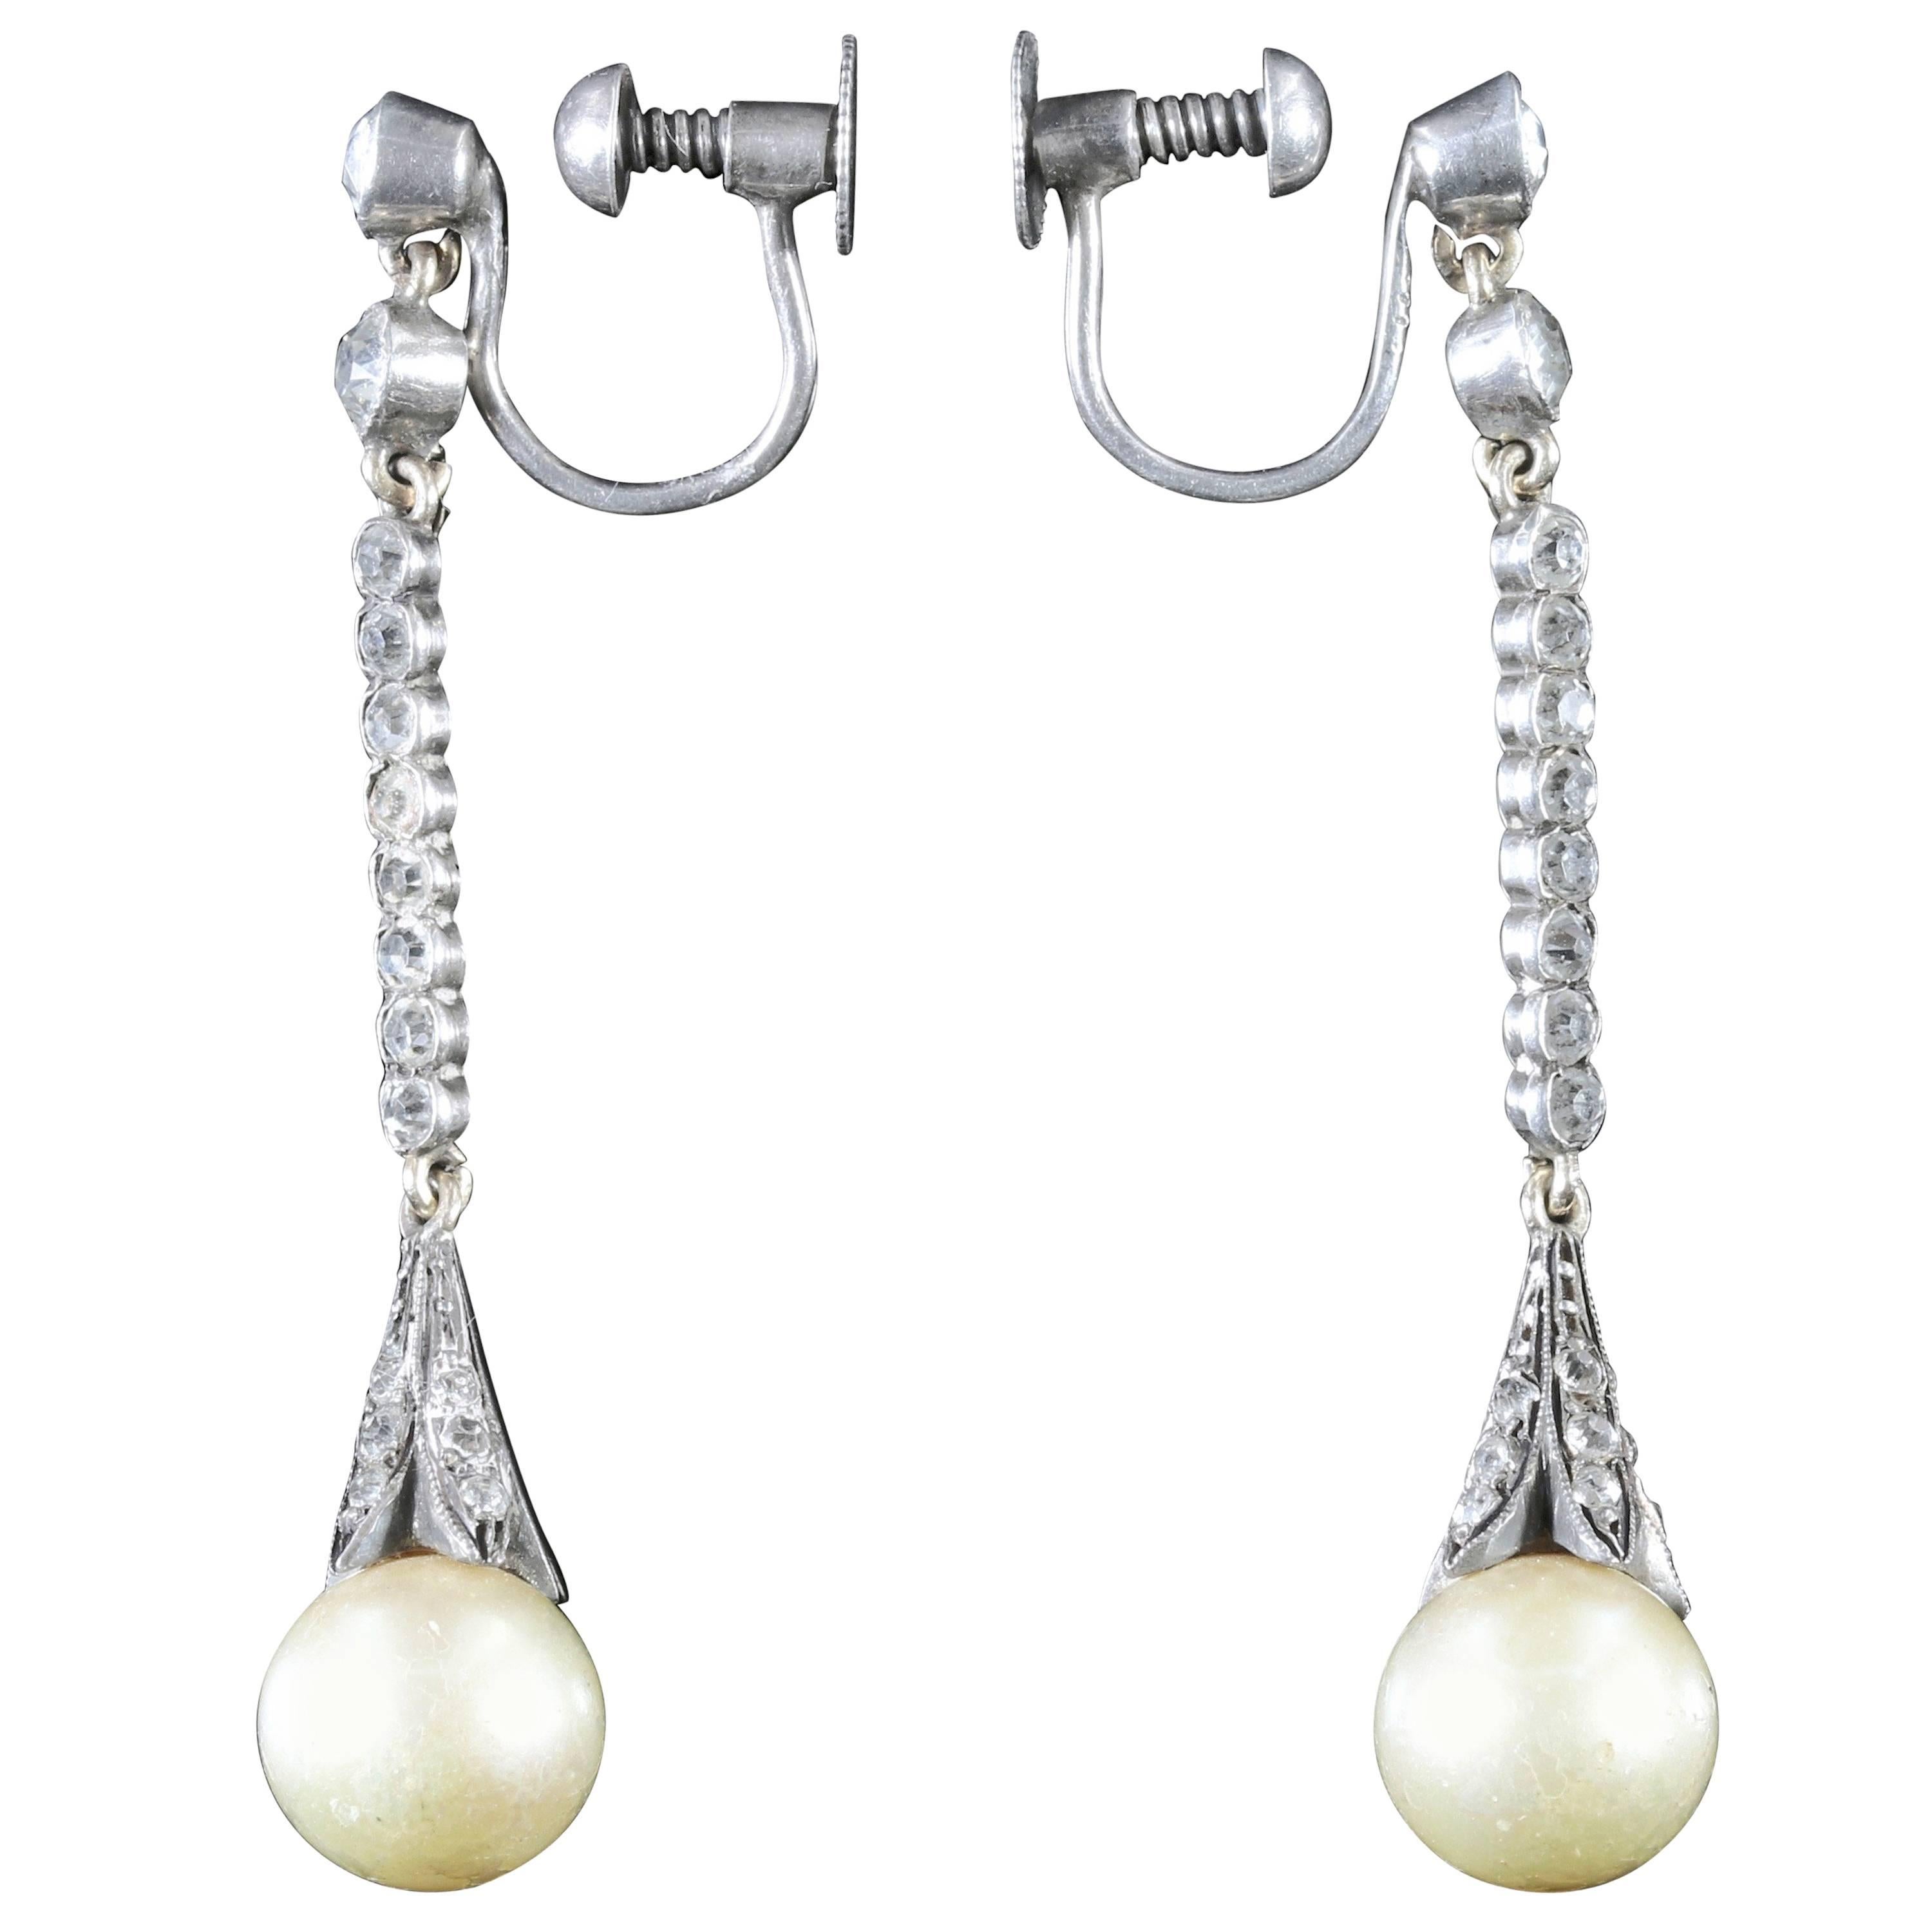 Antique Edwardian Long Sterling Silver Paste Pearl Earrings